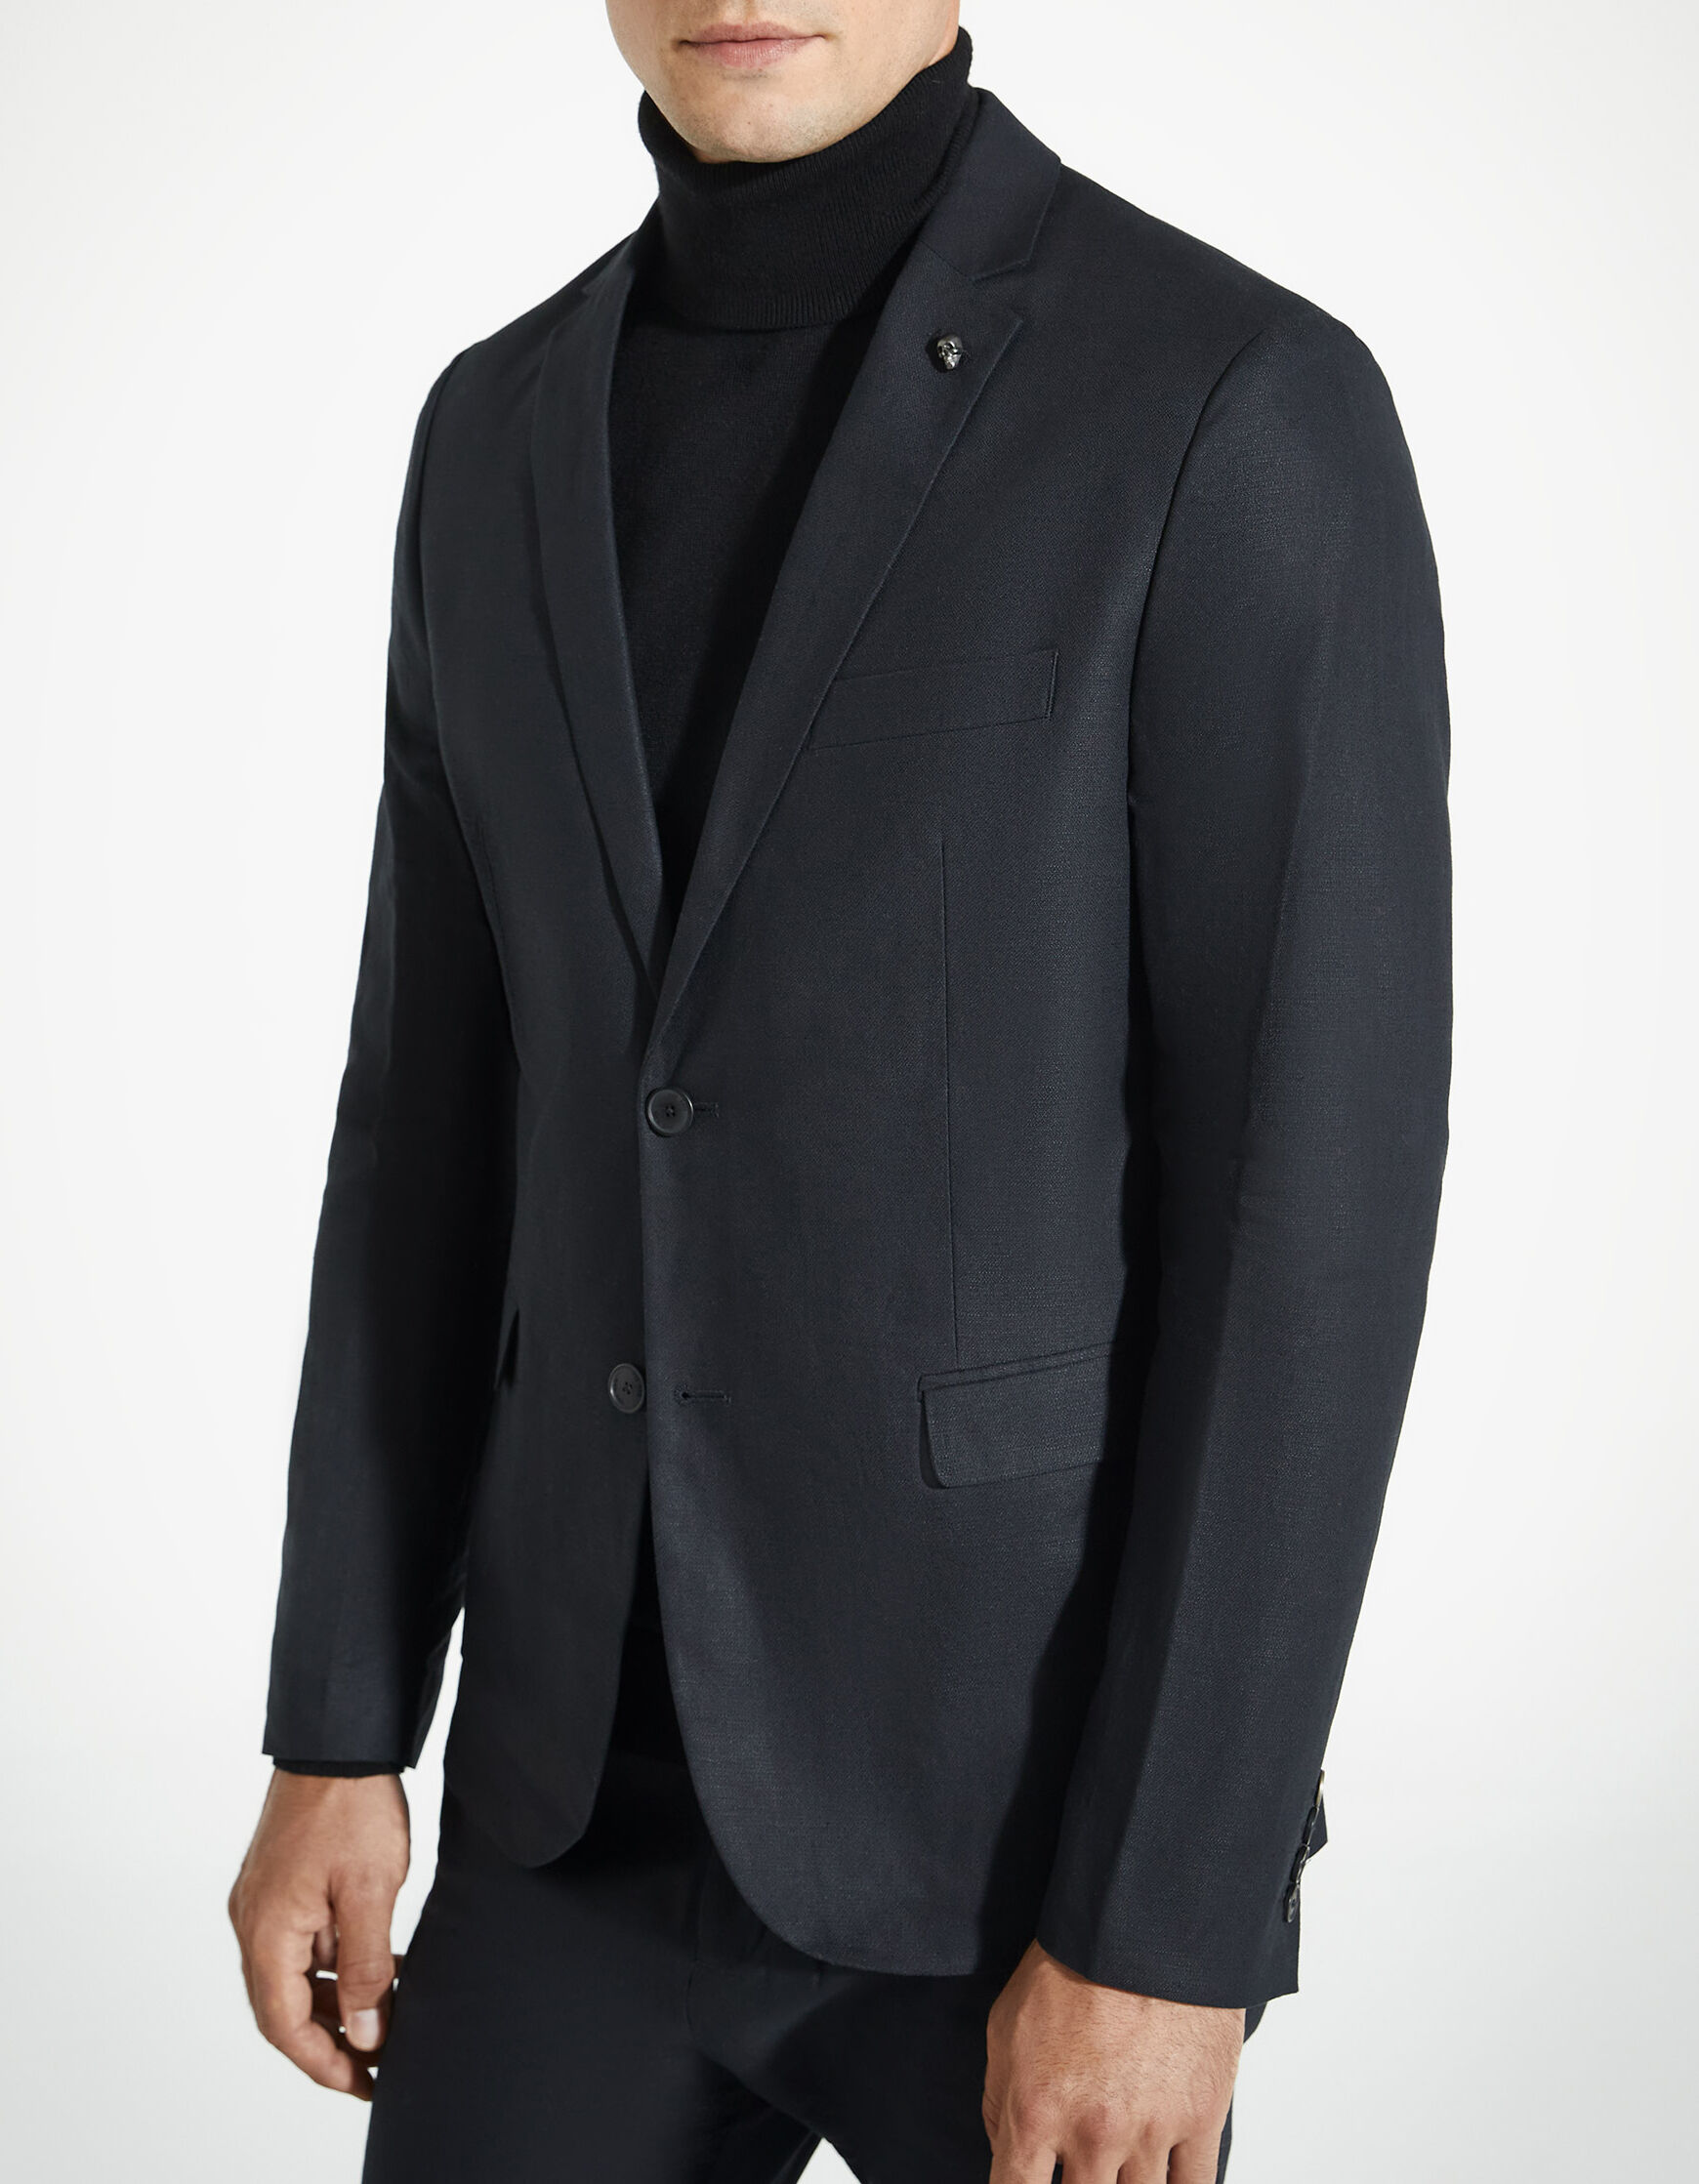 Men's black jacquard cotton linen jacket